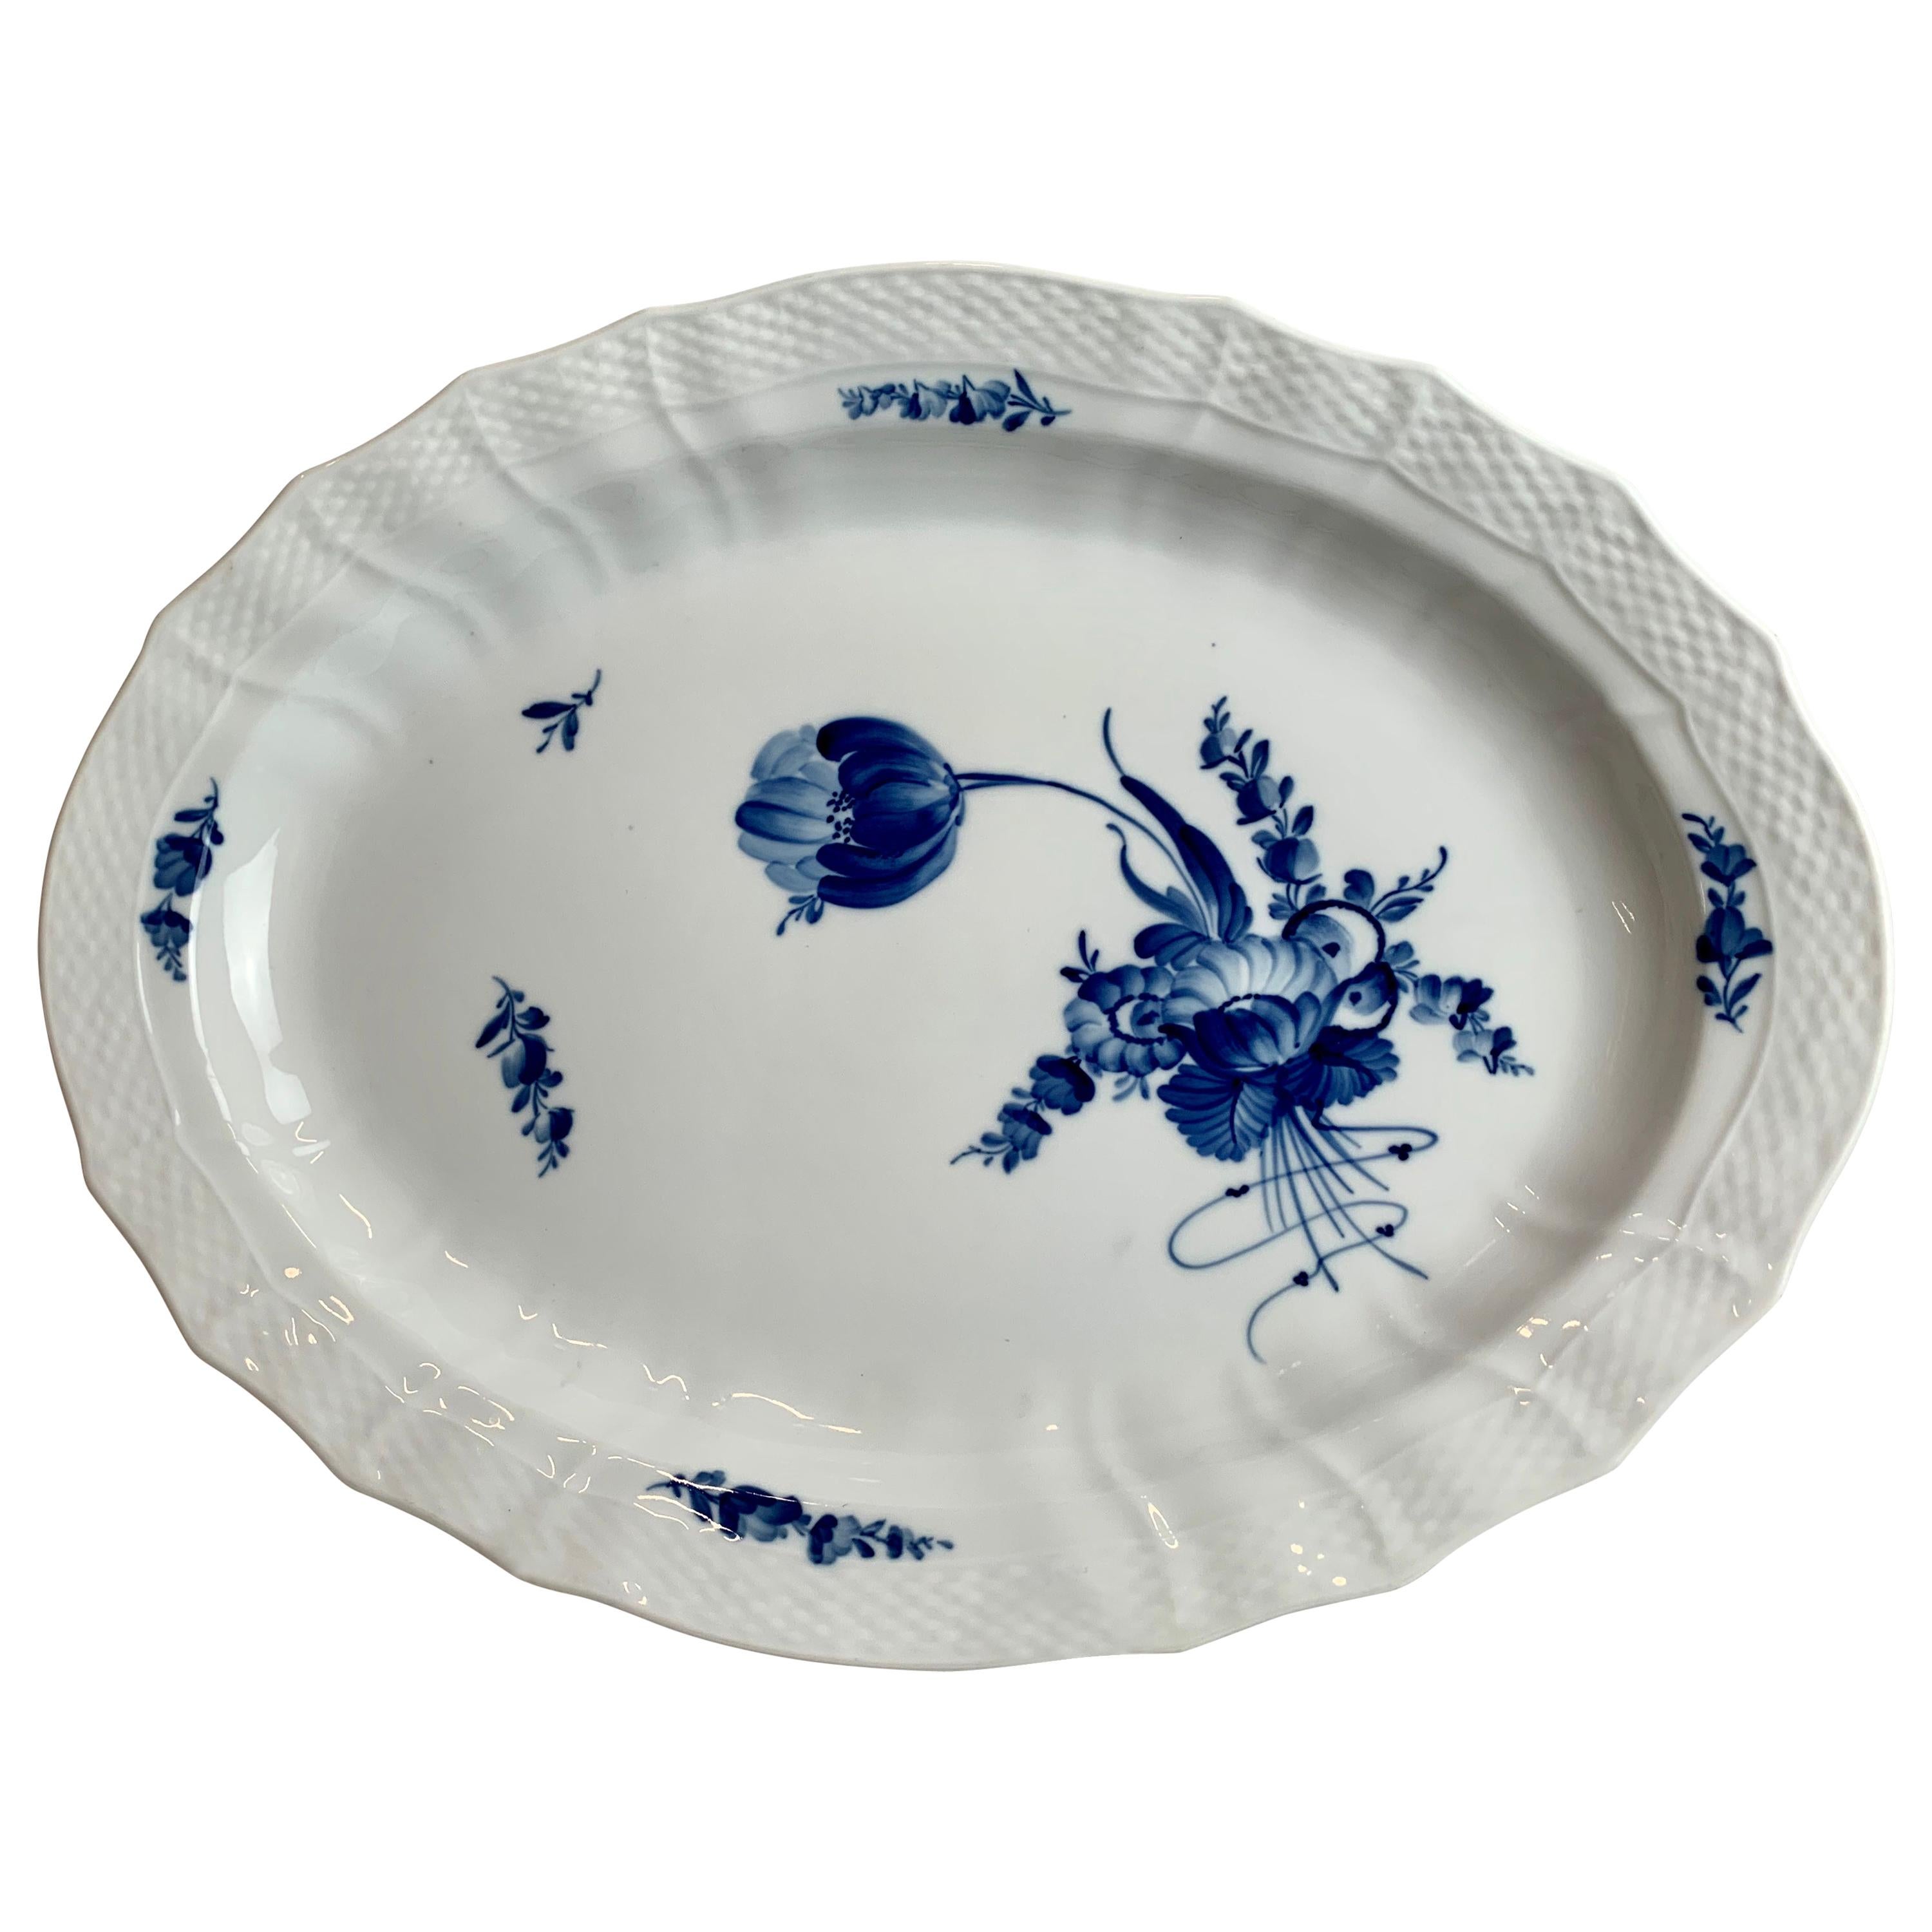  Royal Copenhagen Large Porcelain Platter in the Blue Flower Pattern